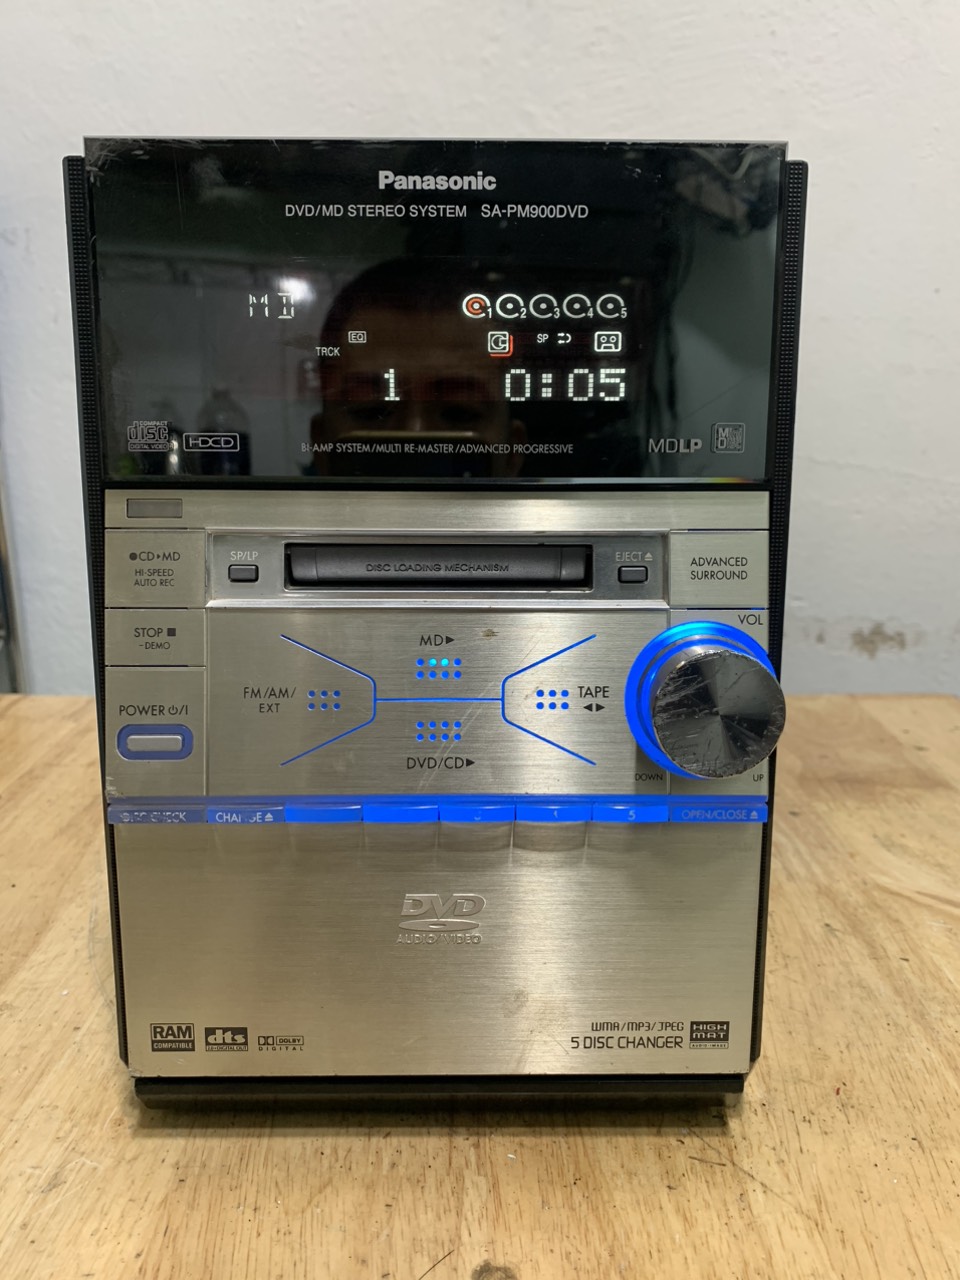 Panasonic DVD/MD STEREO SYSTEM SA-PM900DVD - オーディオ